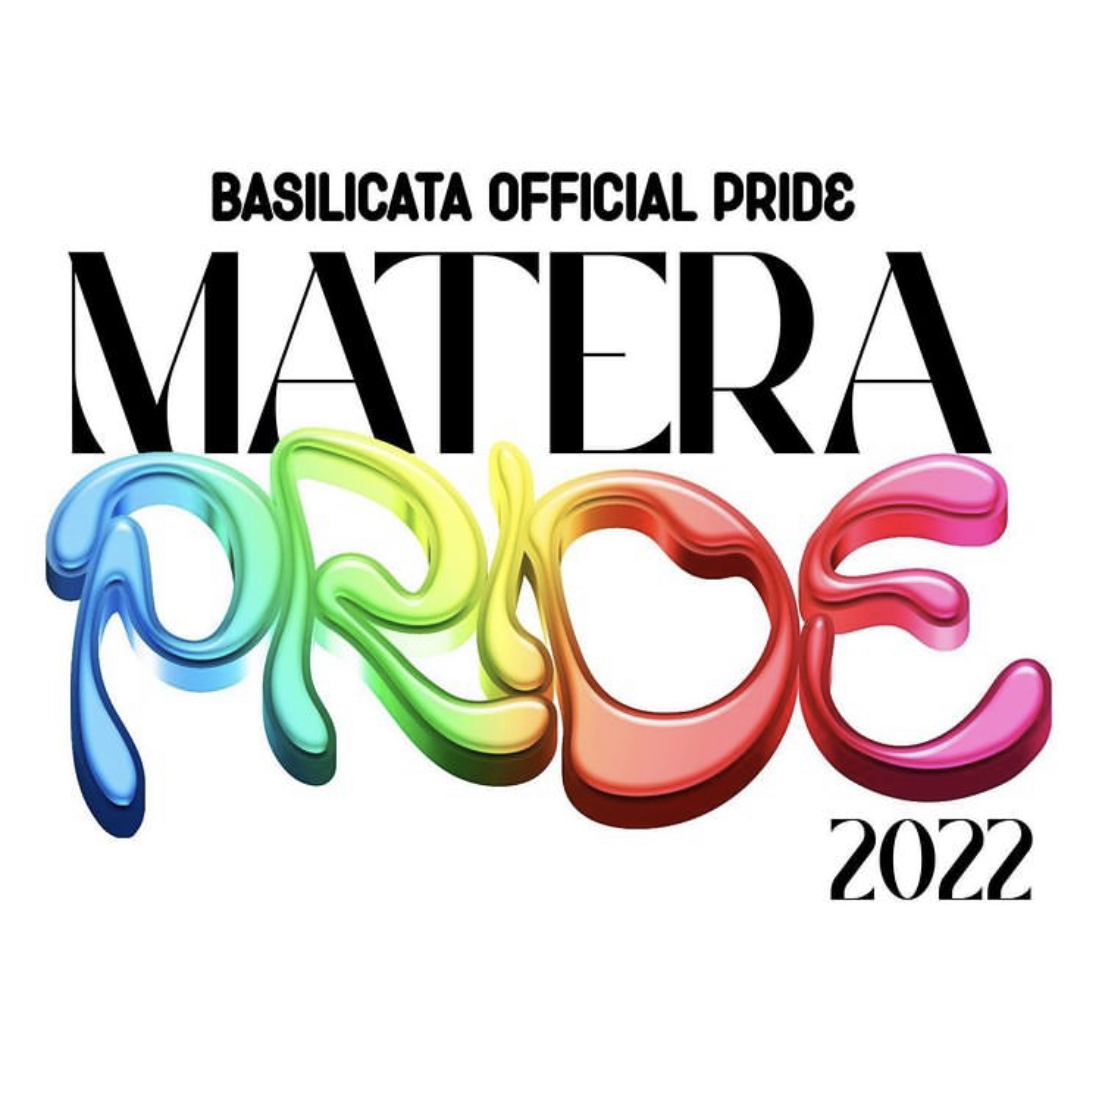 Matera Pride 2022